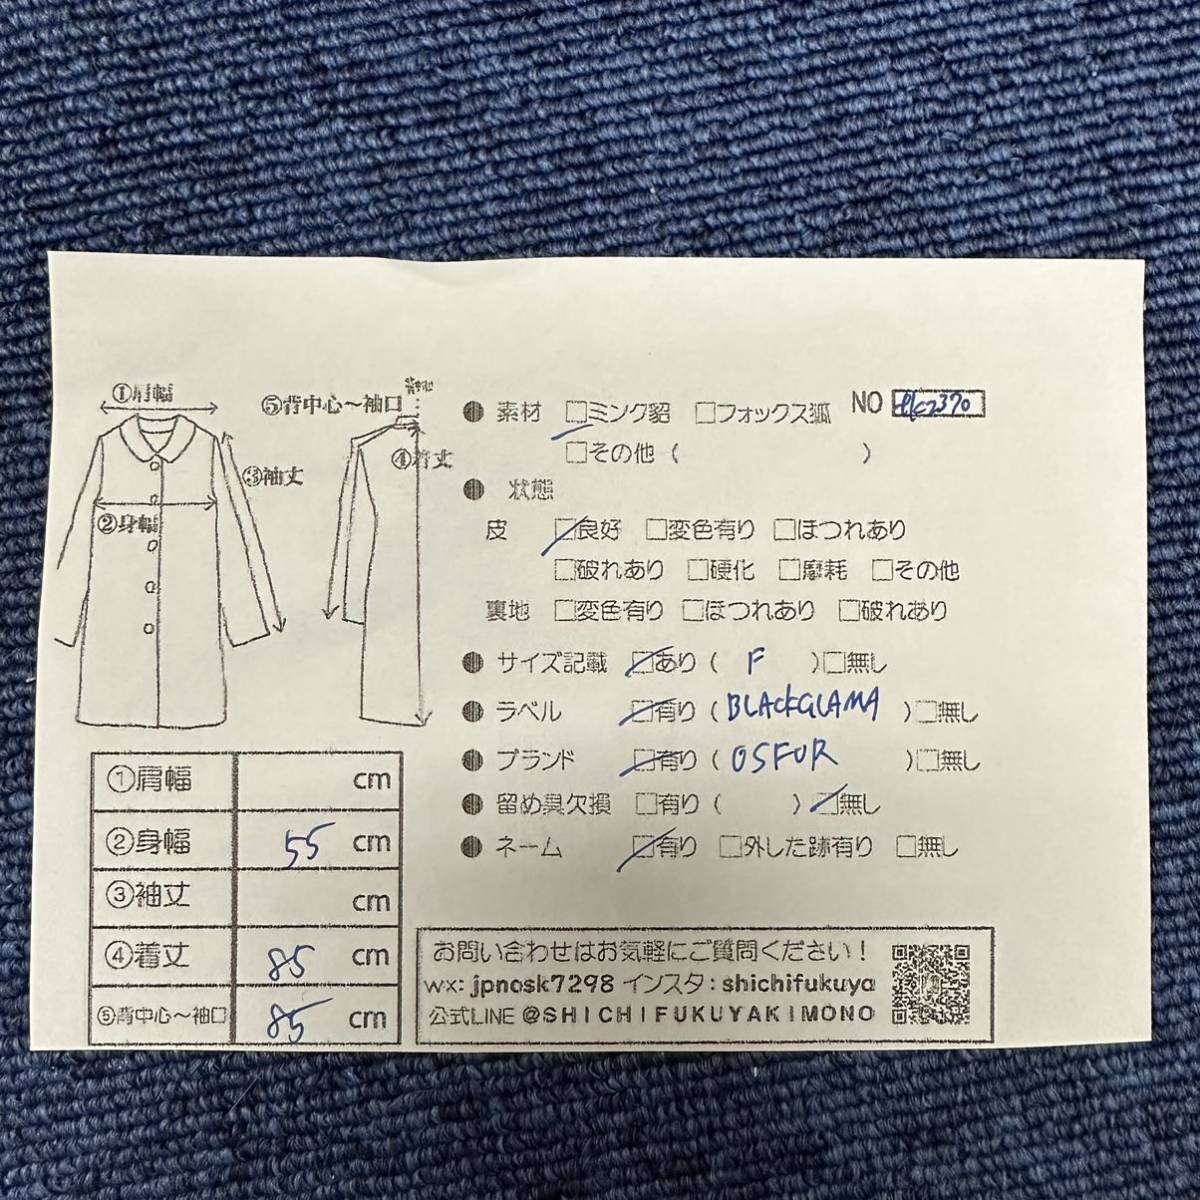 【七福】fk2370 BLACKGLAMA ブラックグラマ OS FUR ロングコート デザインコート ミンクコート ブラックミンク 貂皮 mink身丈 約 85cm_画像10